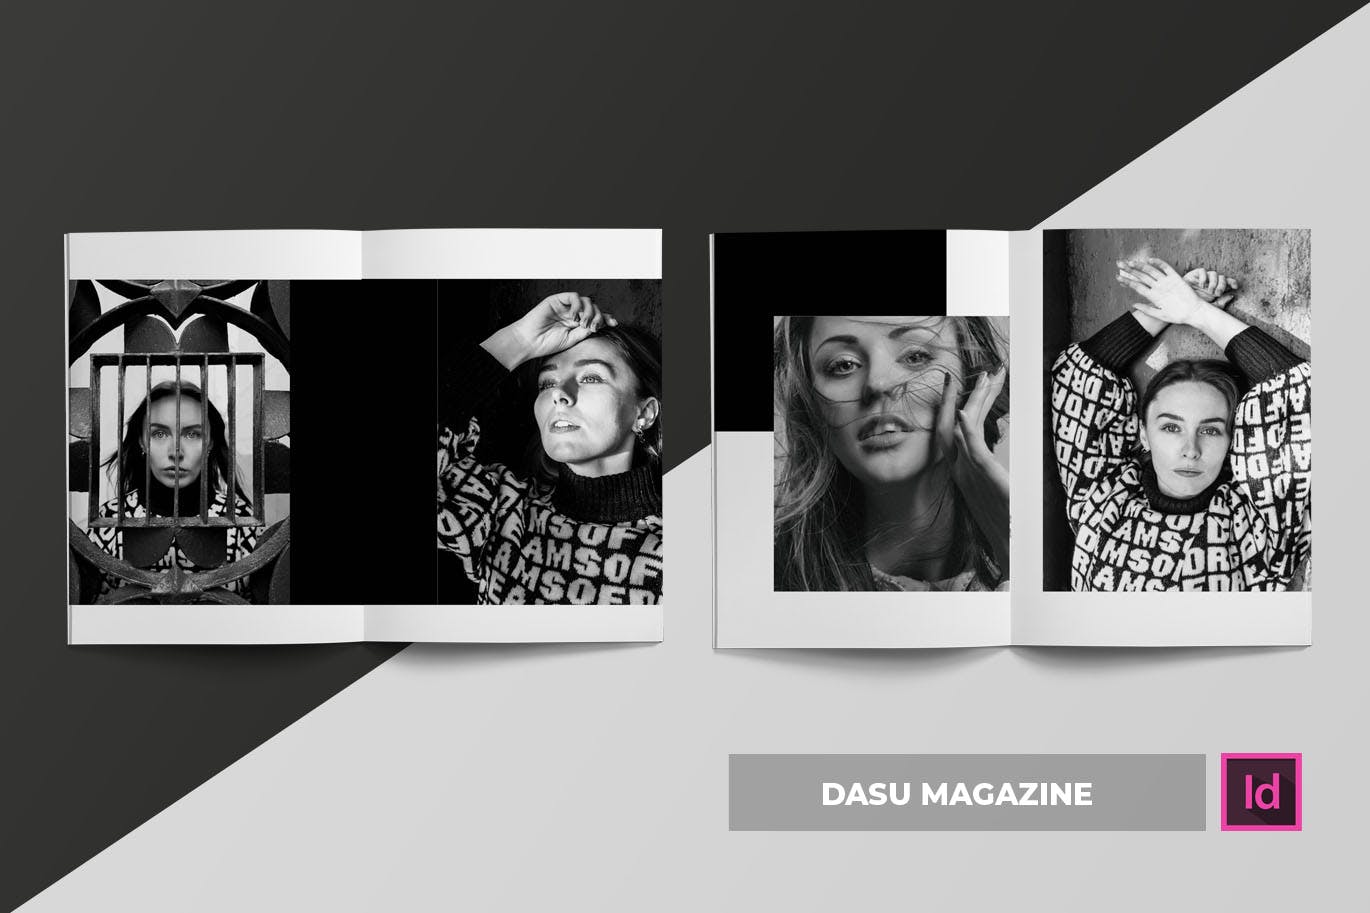 摄影艺术/时装设计主题第一素材精选杂志排版设计模板 Dasu | Magazine Template插图(3)